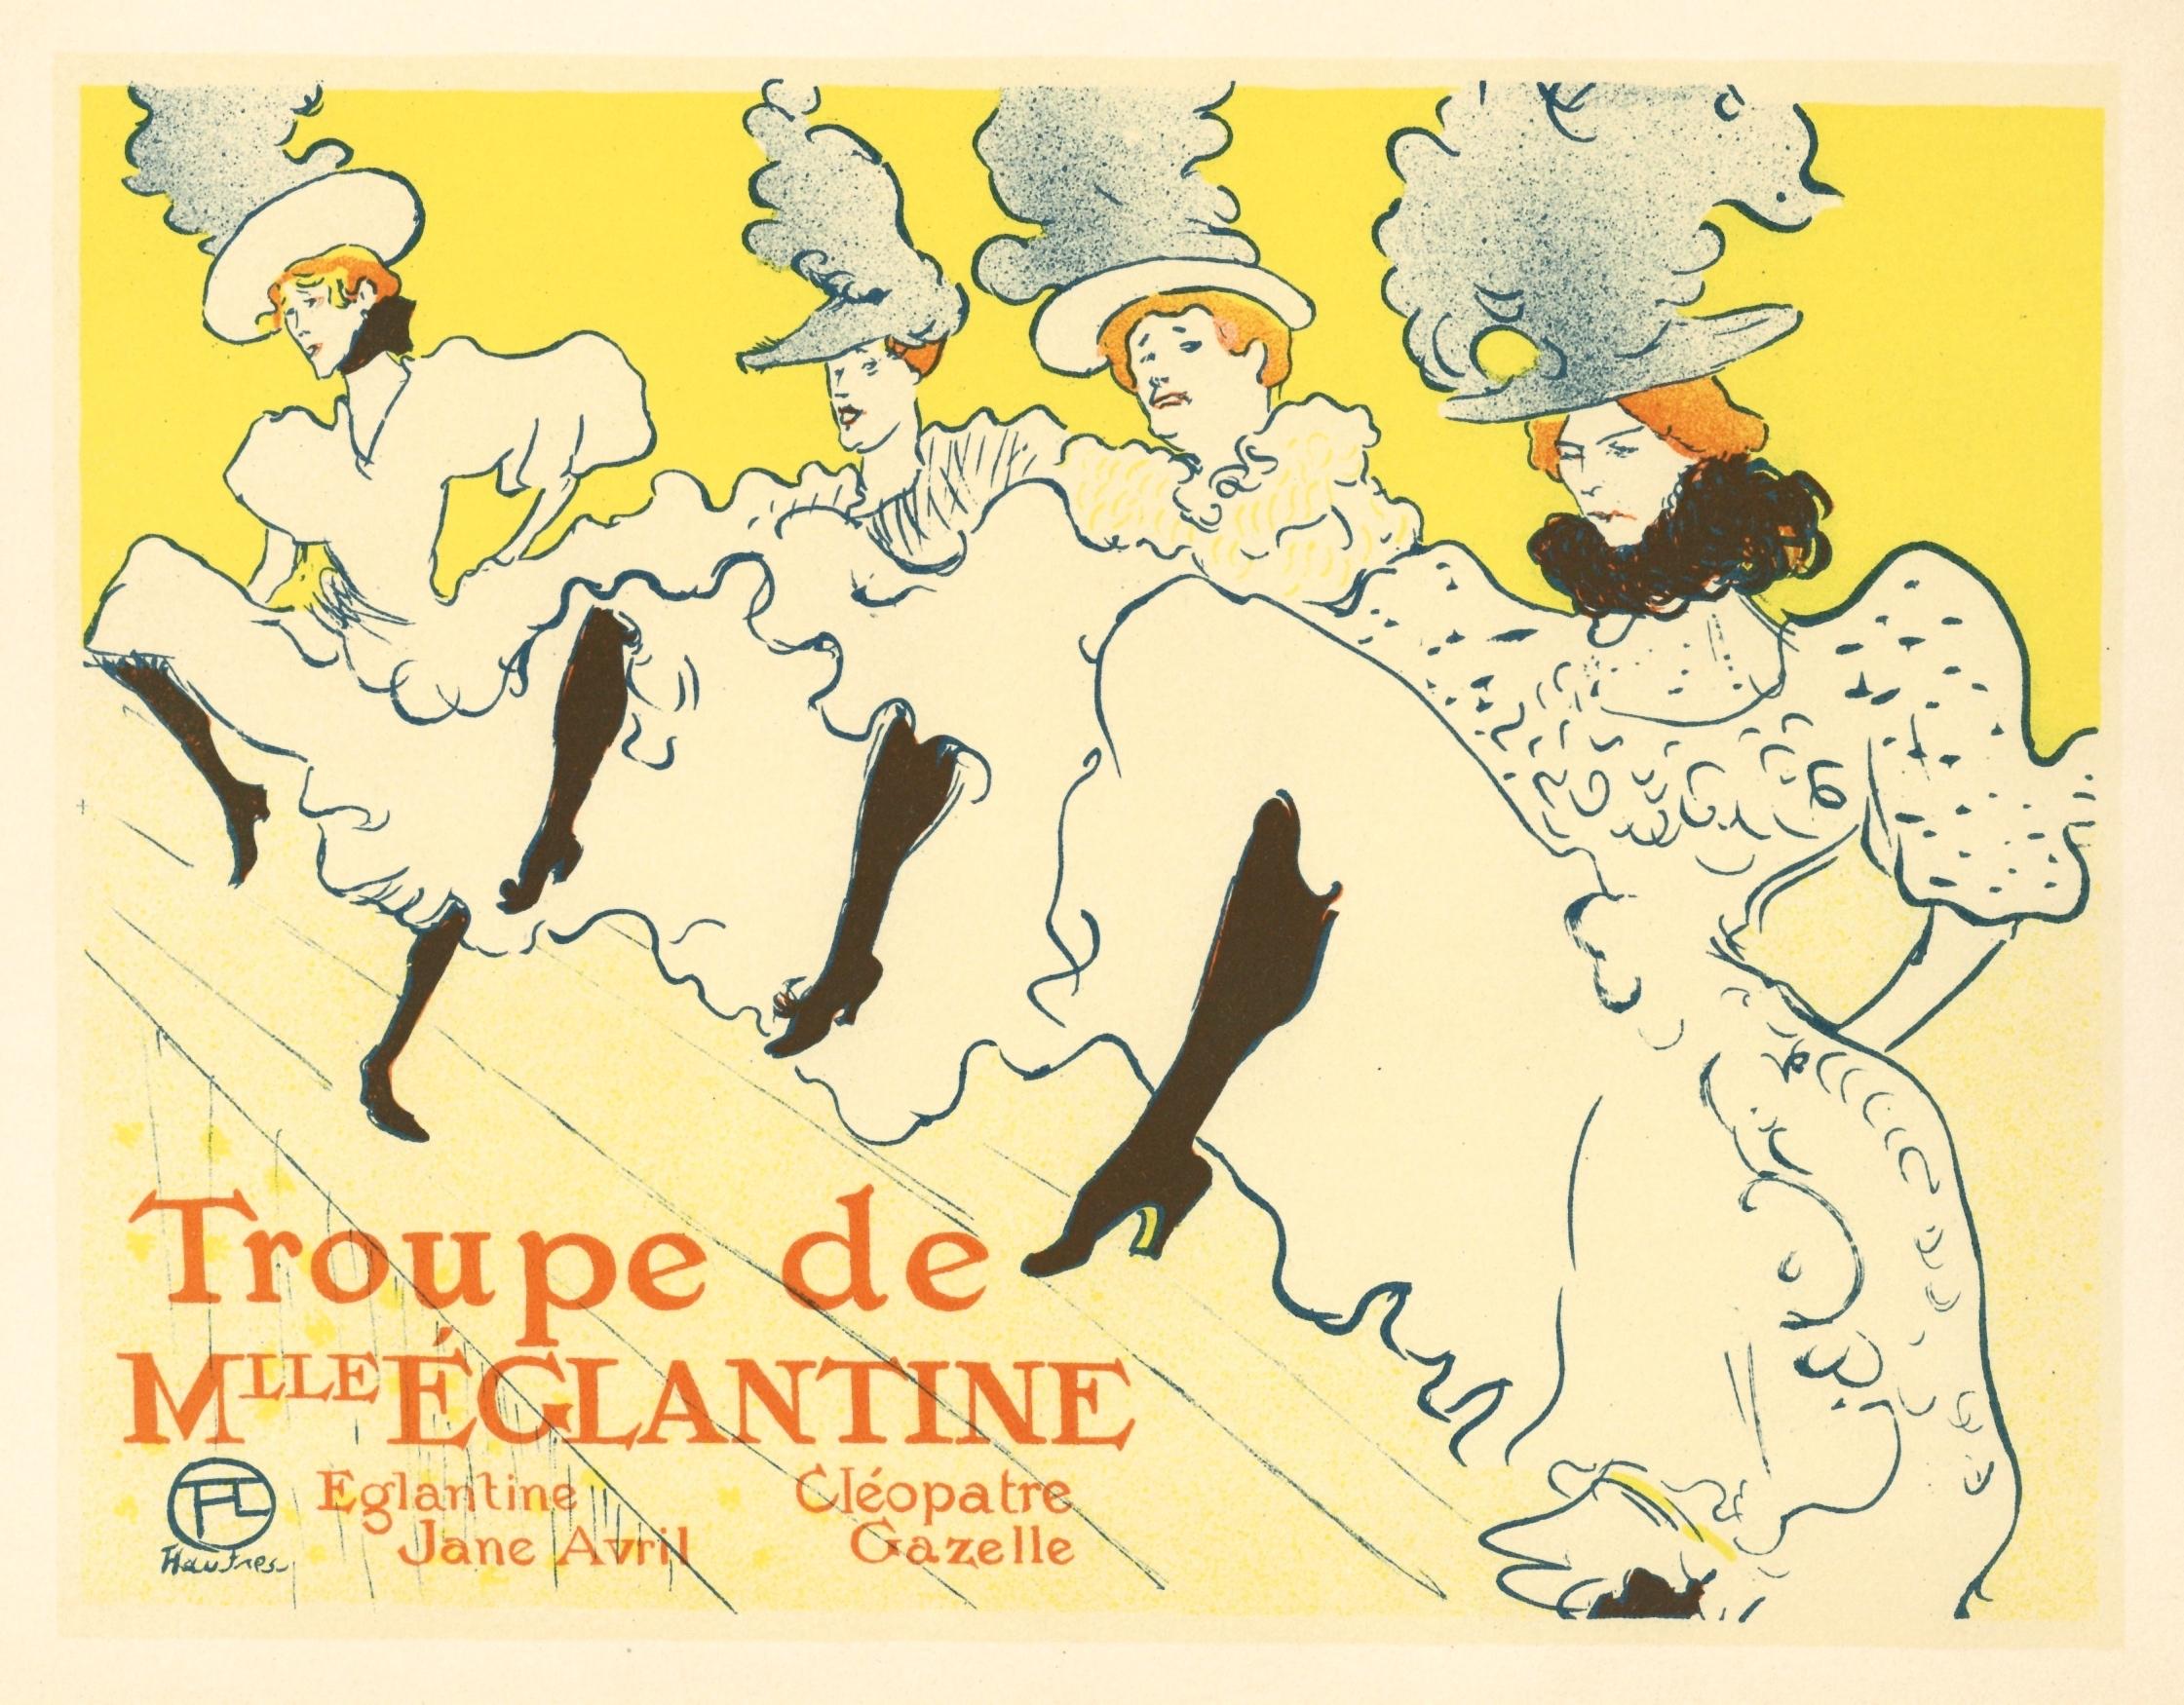 "La Troupe de Mademoiselle Eglantine" lithograph poster - Print by (After) Henri Toulouse Lautrec